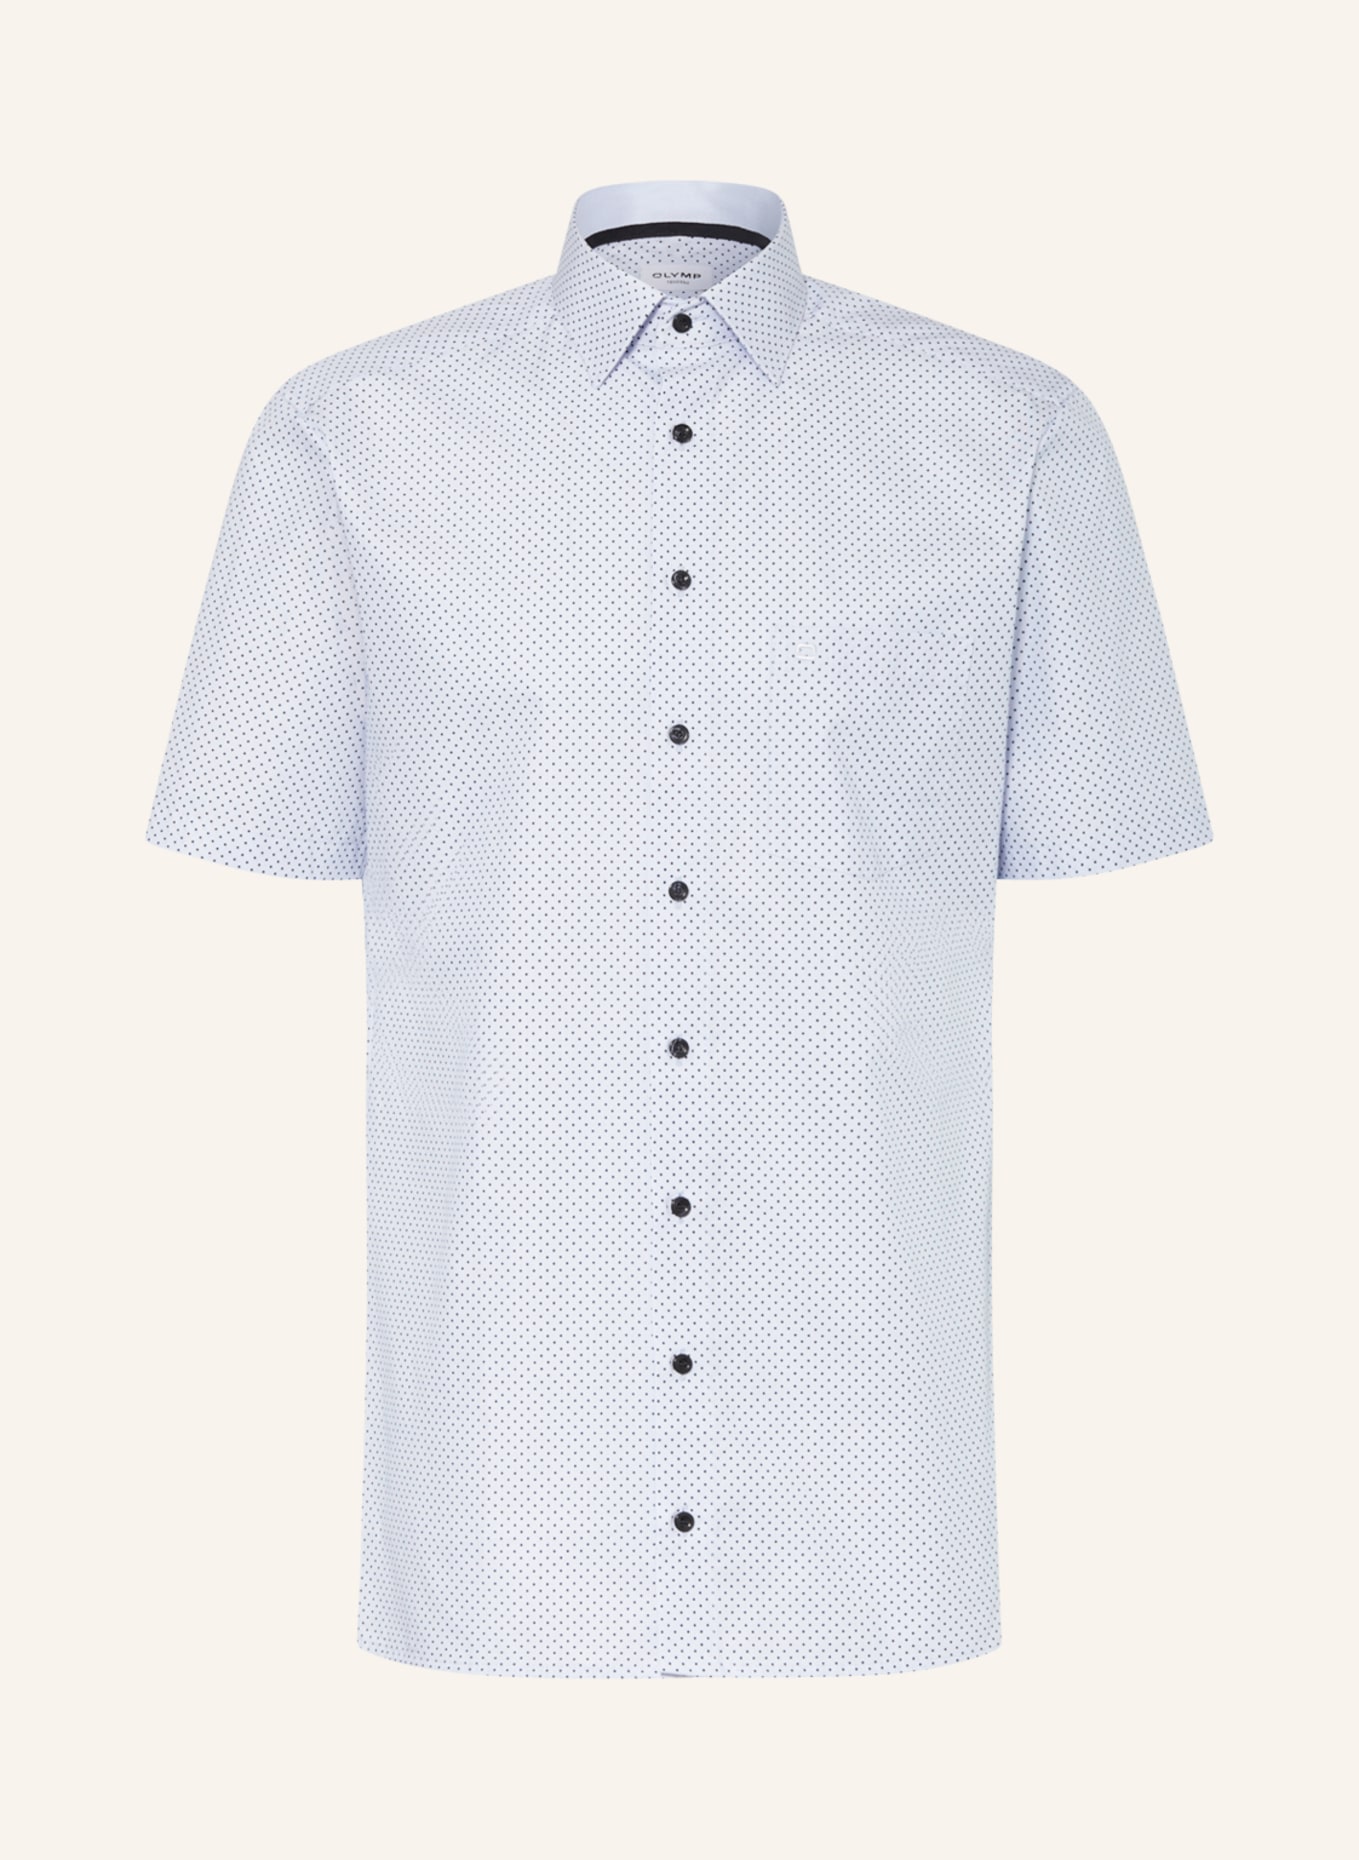 OLYMP Koszula z krótkim rękawem, krój zbliżony do modern fit, Kolor: JASNONIEBIESKI/ GRANATOWY (Obrazek 1)